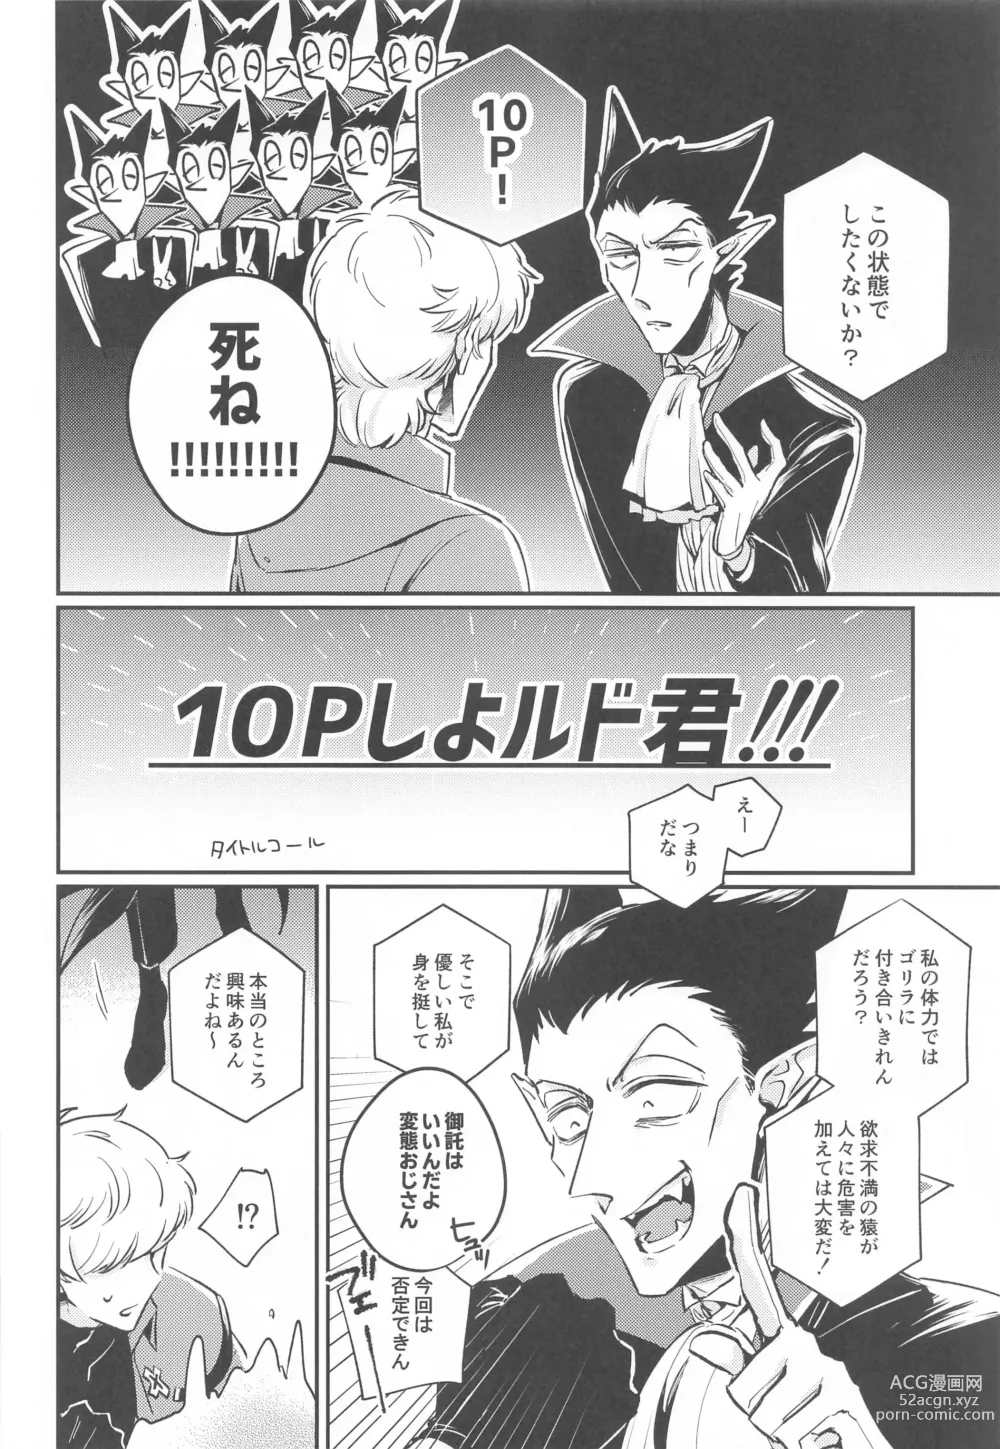 Page 5 of doujinshi 10P Shiyo Ldo-kun!